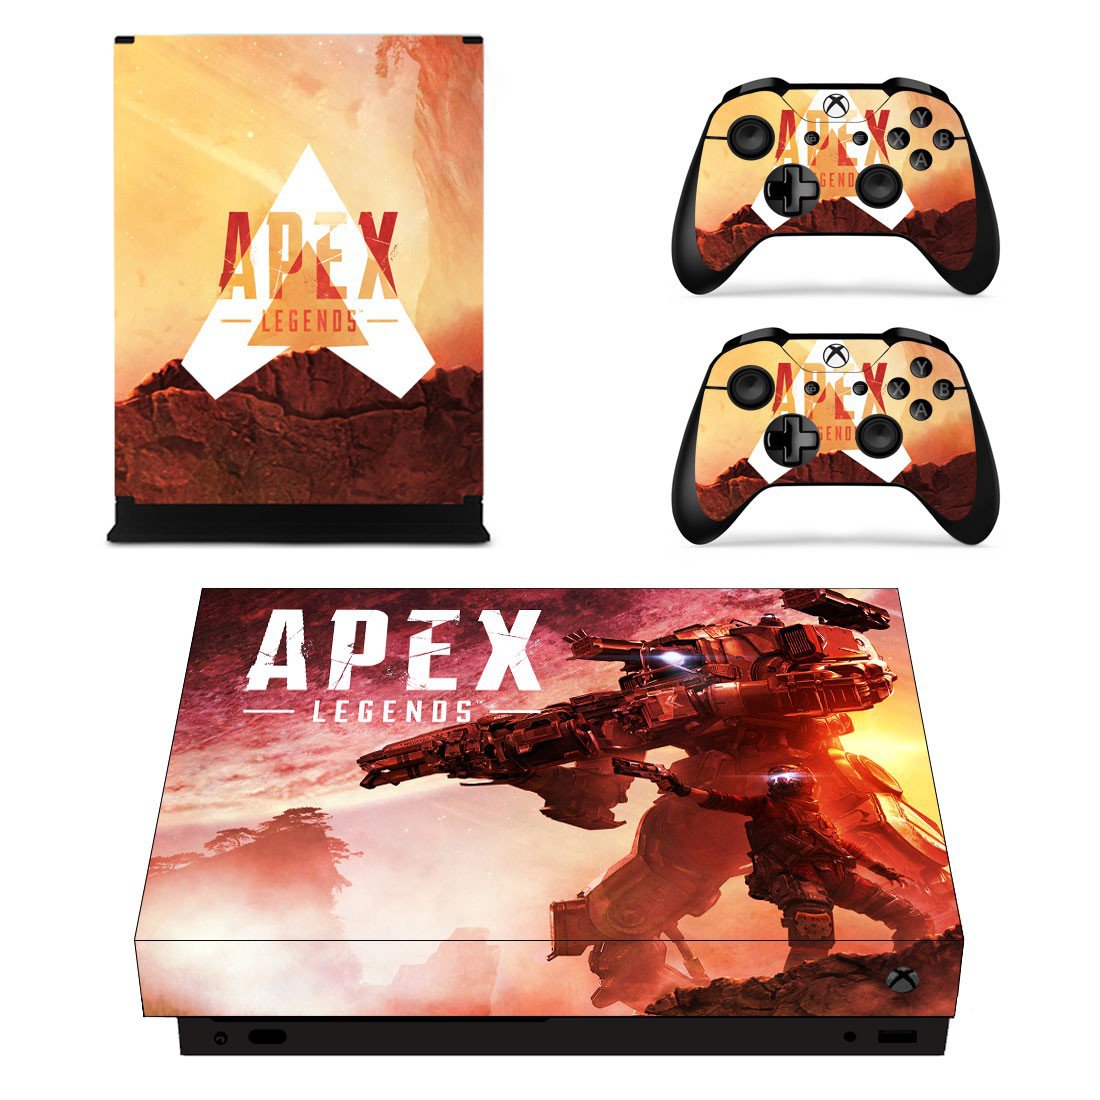 apex legends controls xbox